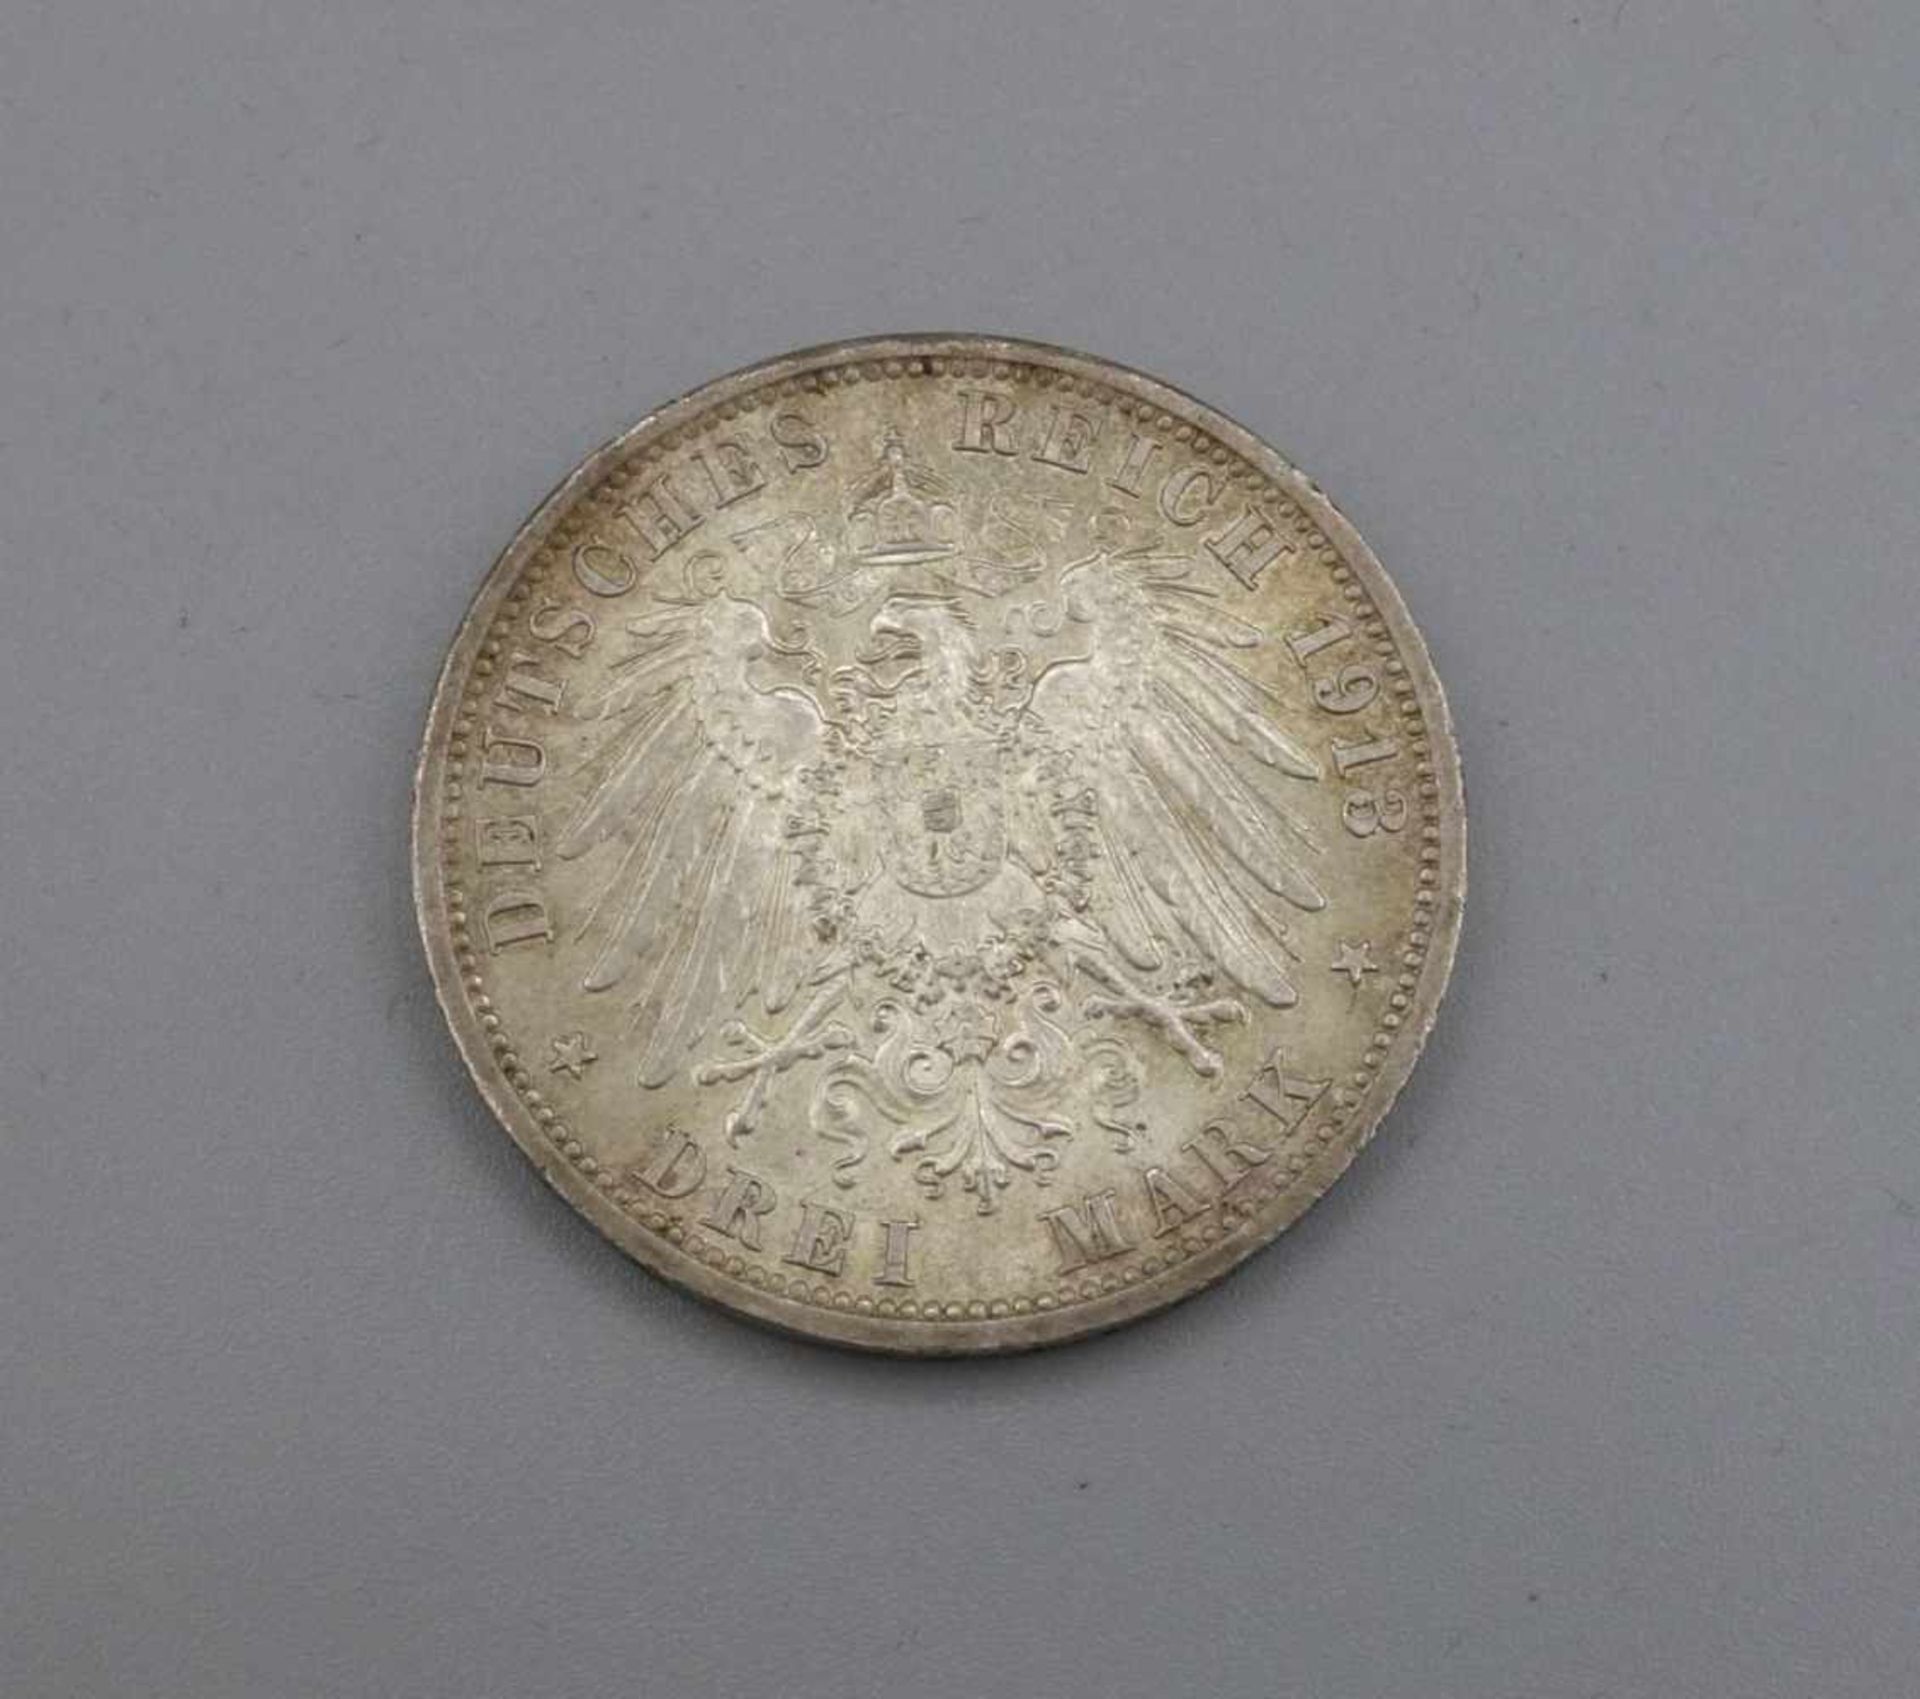 SILBERMÜNZE: 3 MARK - 1913, Silber, 16,6 Gramm. Auf der Münze bez.: "Wilhelm II Deutscher Kaiser